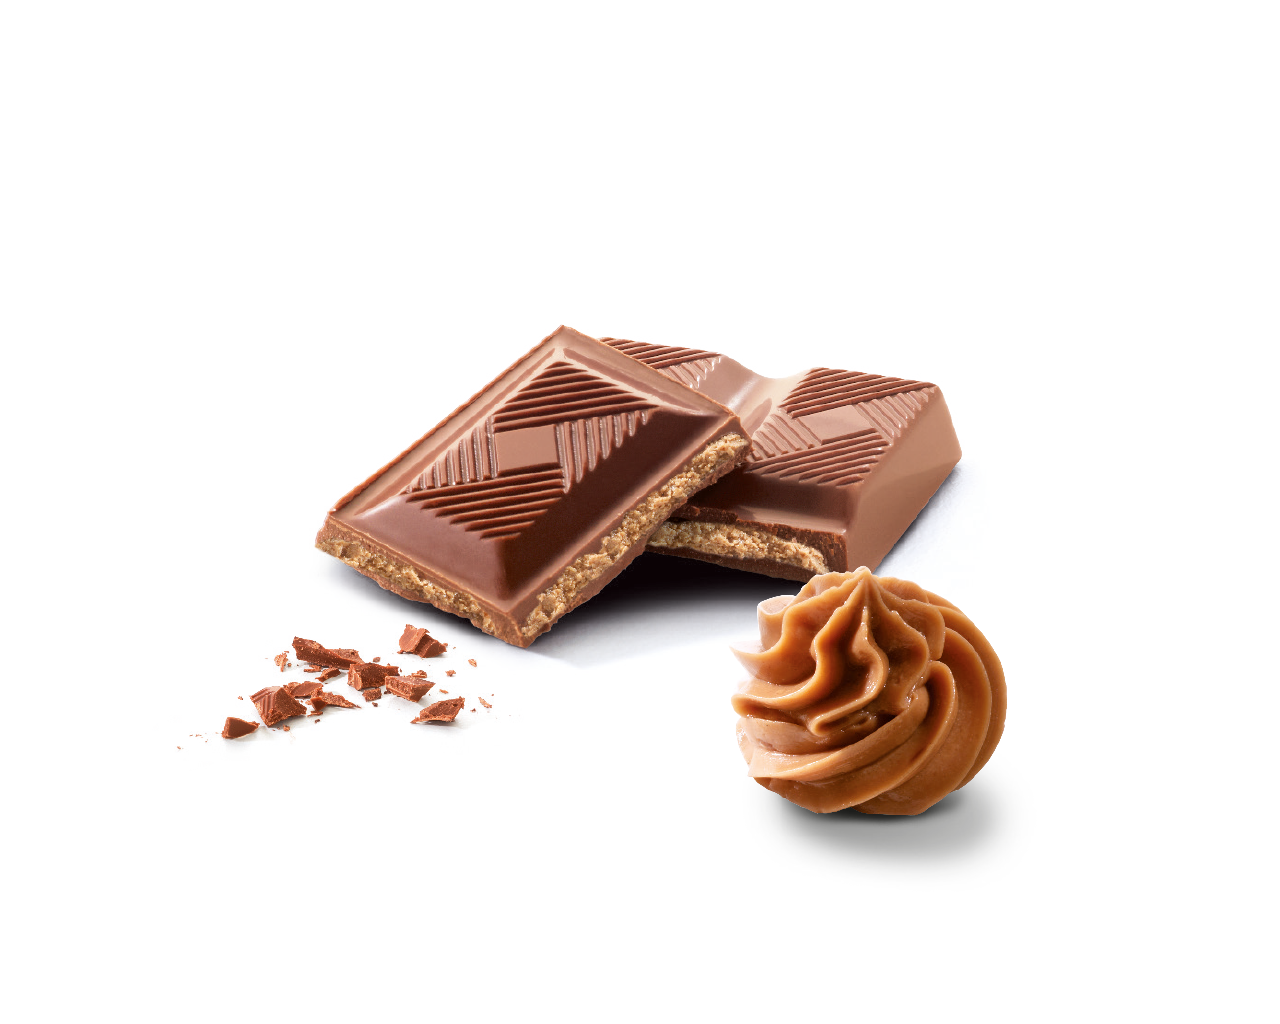 Yver • Tablette Chocolat Lait Praliné 36% 100g Normandise